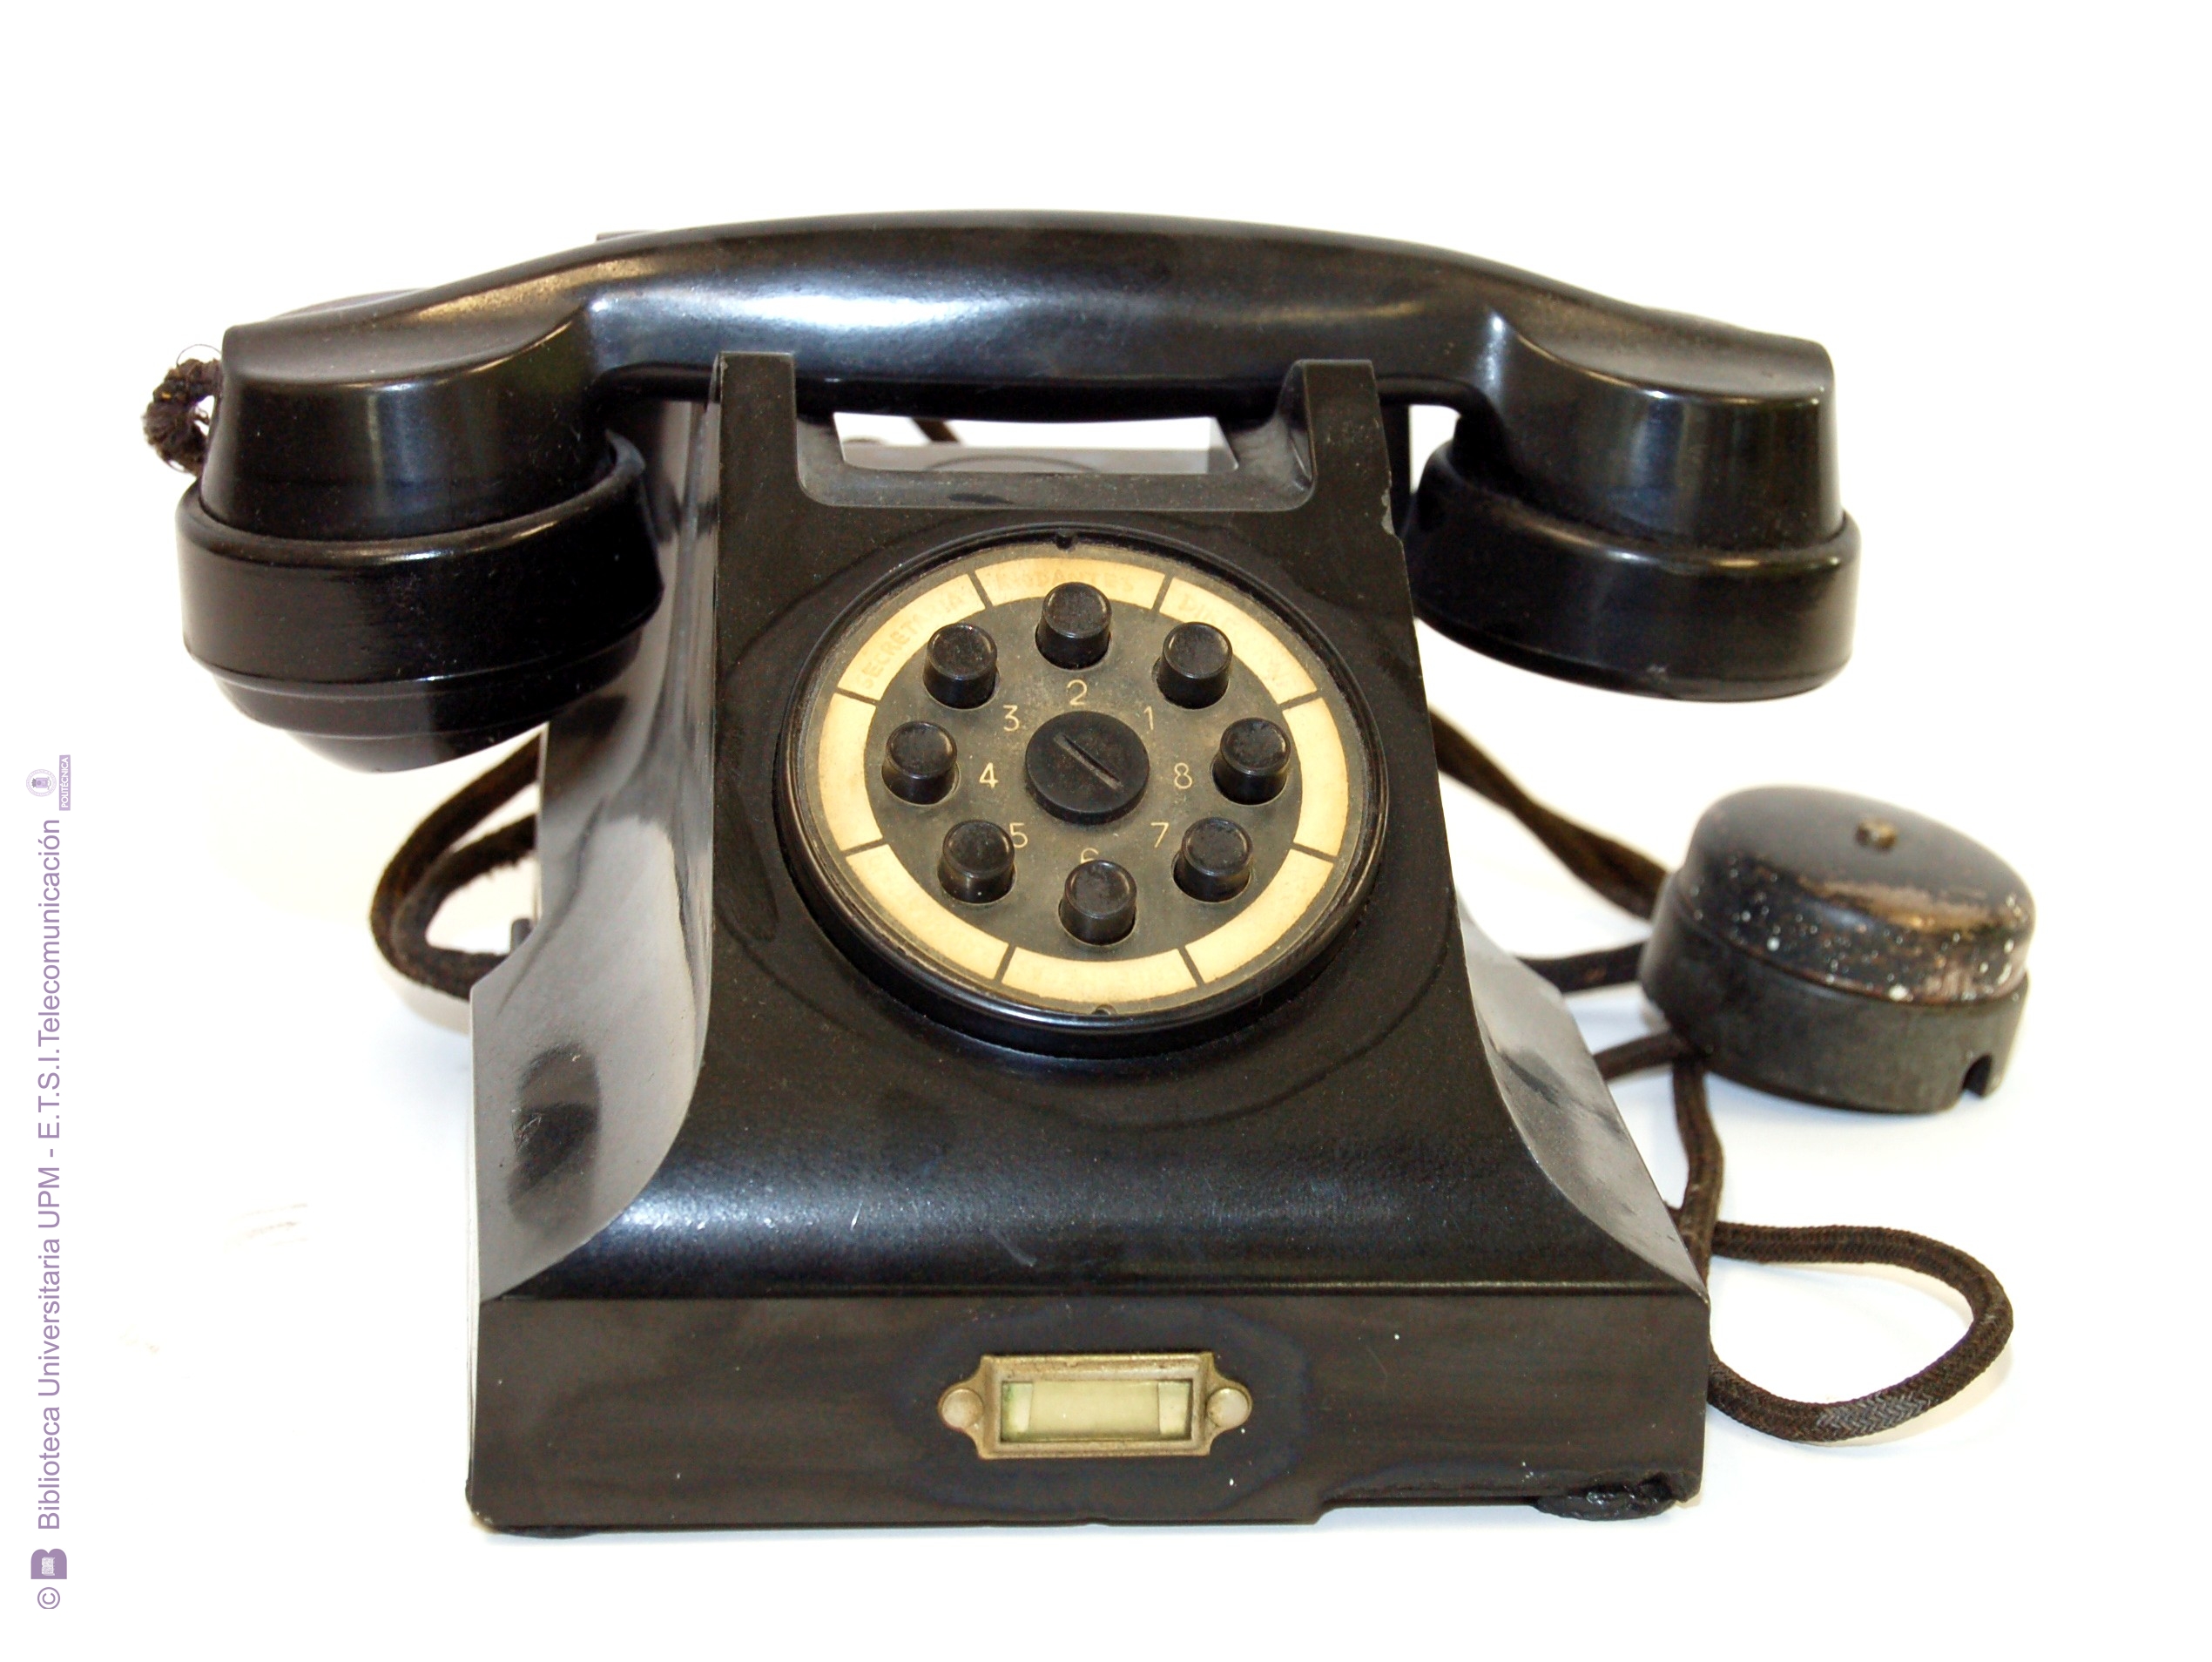 50 90 90 телефон. Моторола 1980. Motorola 1928. Дисковые Телефонные аппараты 1896. Старинные мобильные телефоны.